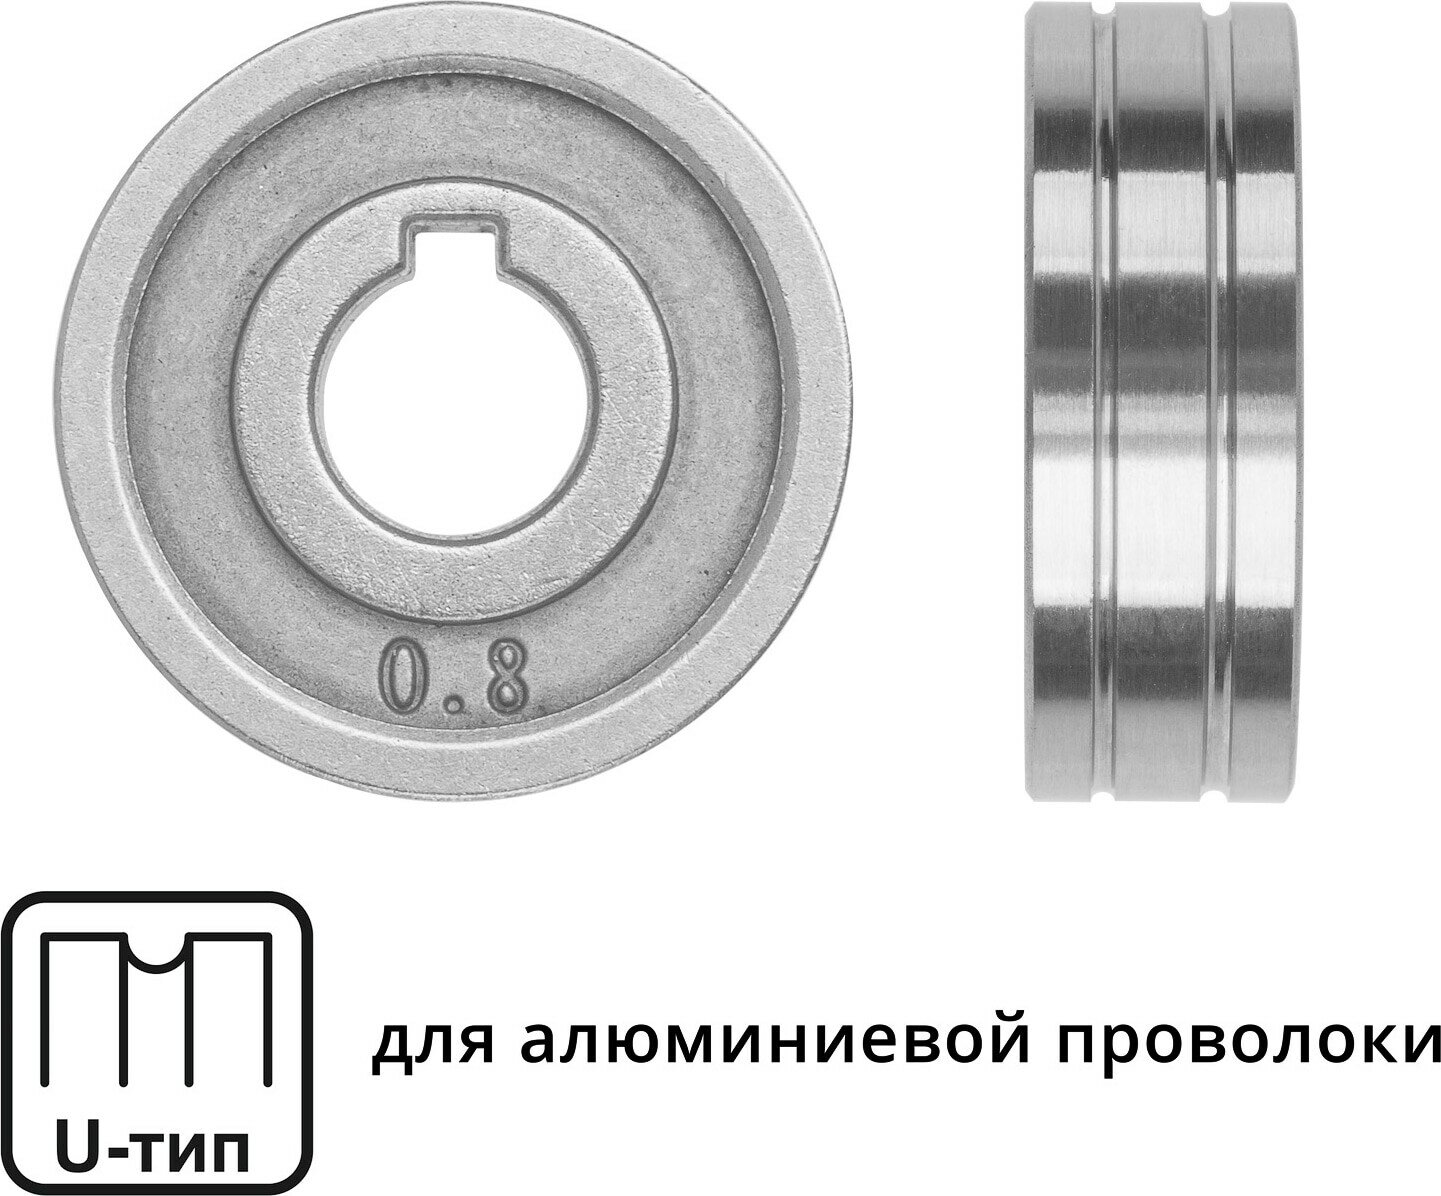 Ролик подающий к полуавтомату для алюминиевой проволоки SOLARIS ф 30/10 мм 0,8-1,0 мм U-тип (WA-2439)